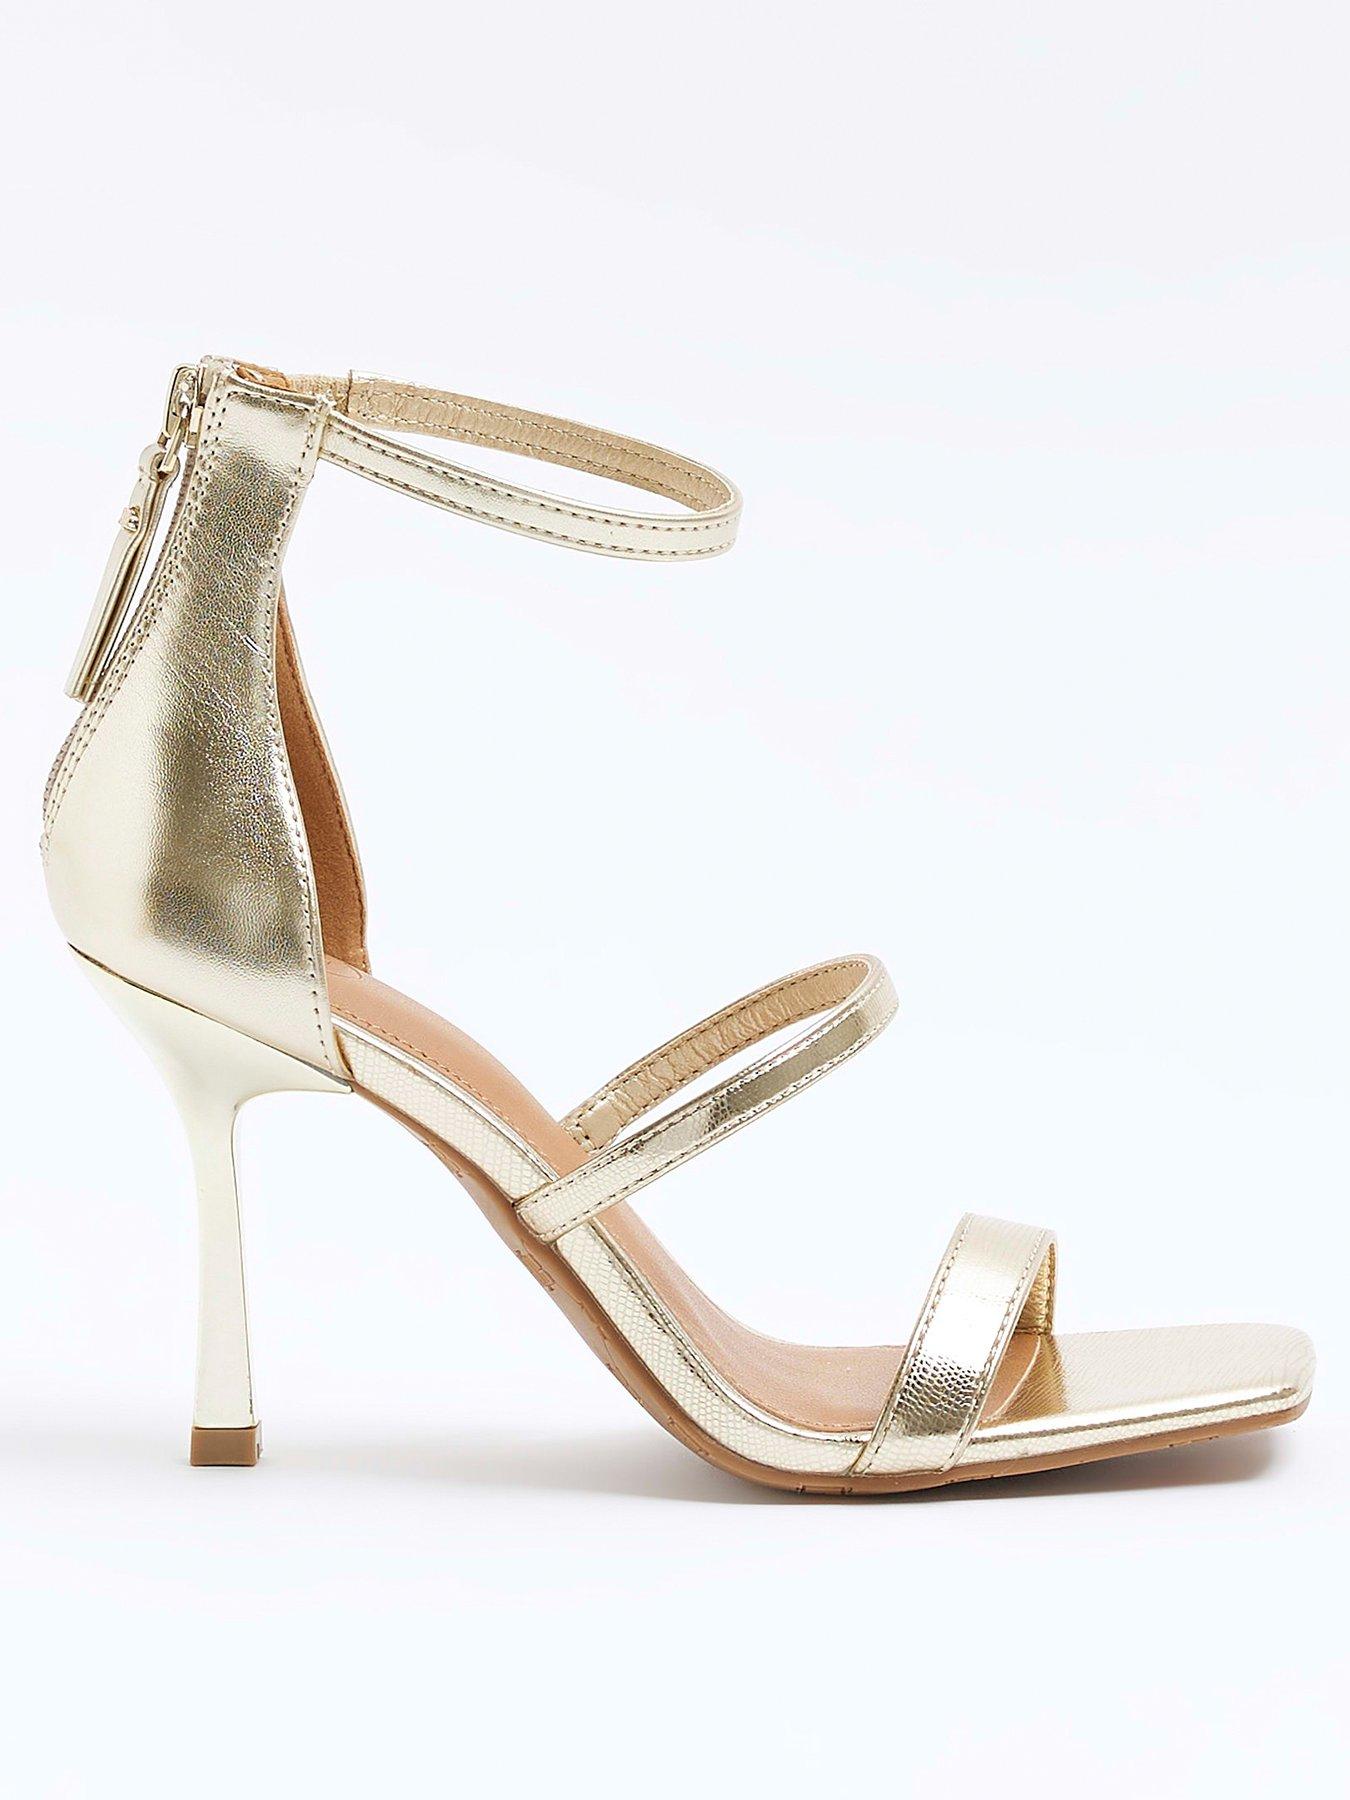 Gold heels by Amanda Gregory | Gold heels, Heels, Shoes women heels